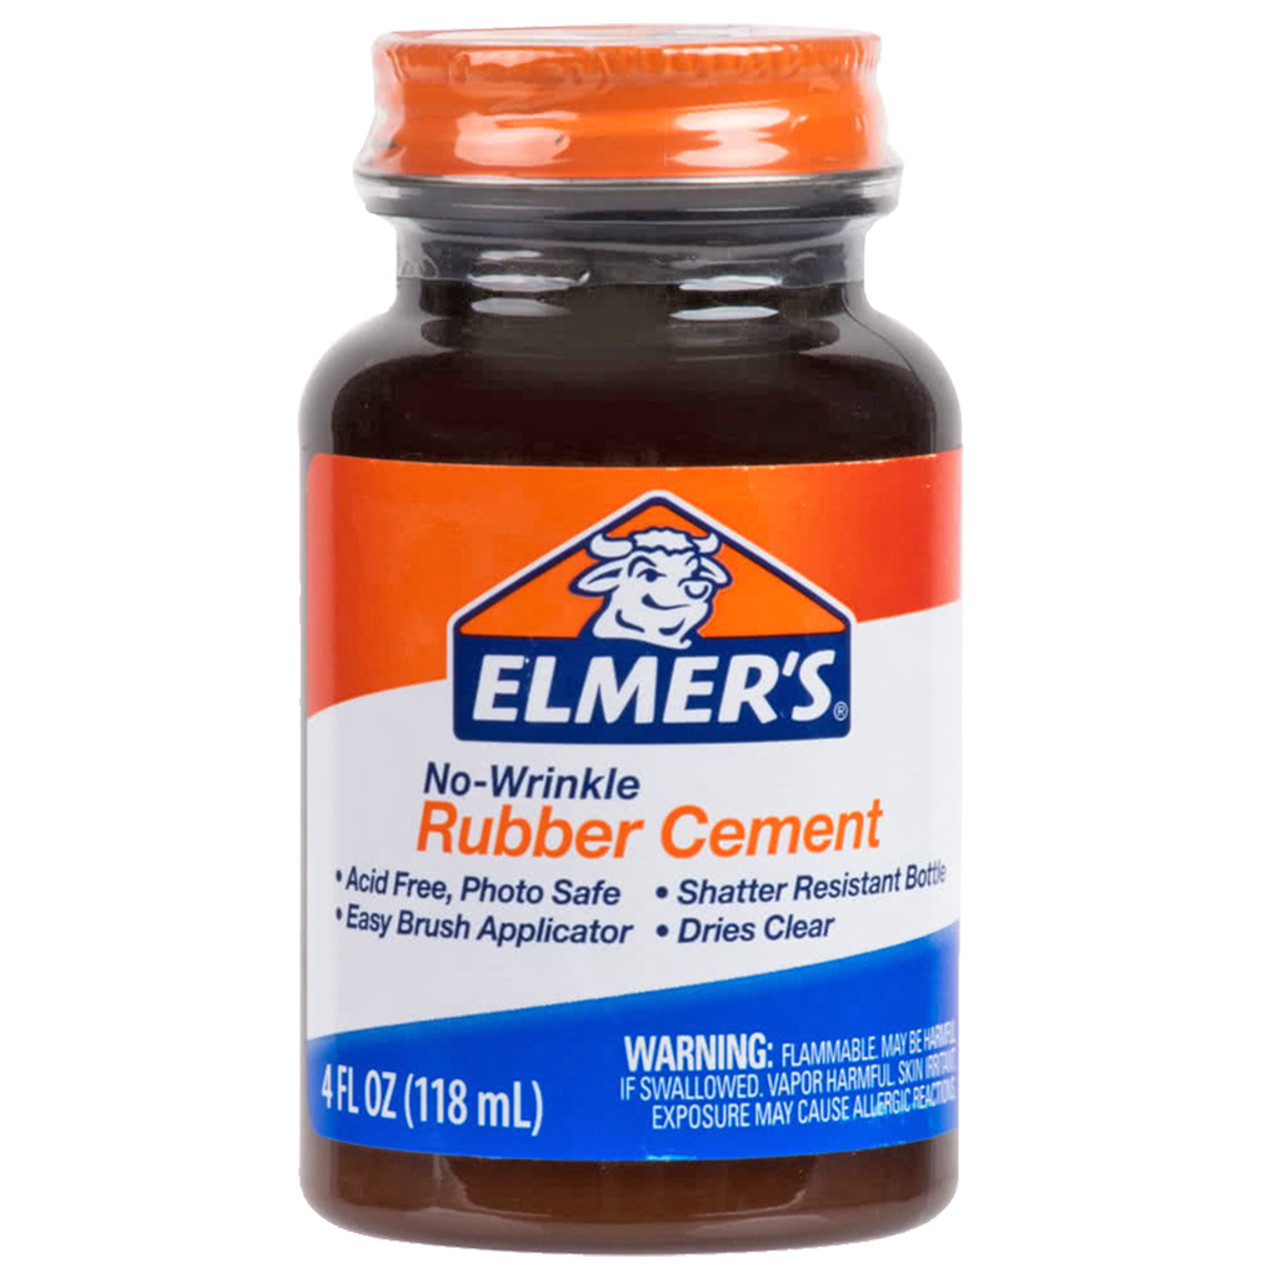 Elmers Glue 4.0 oz